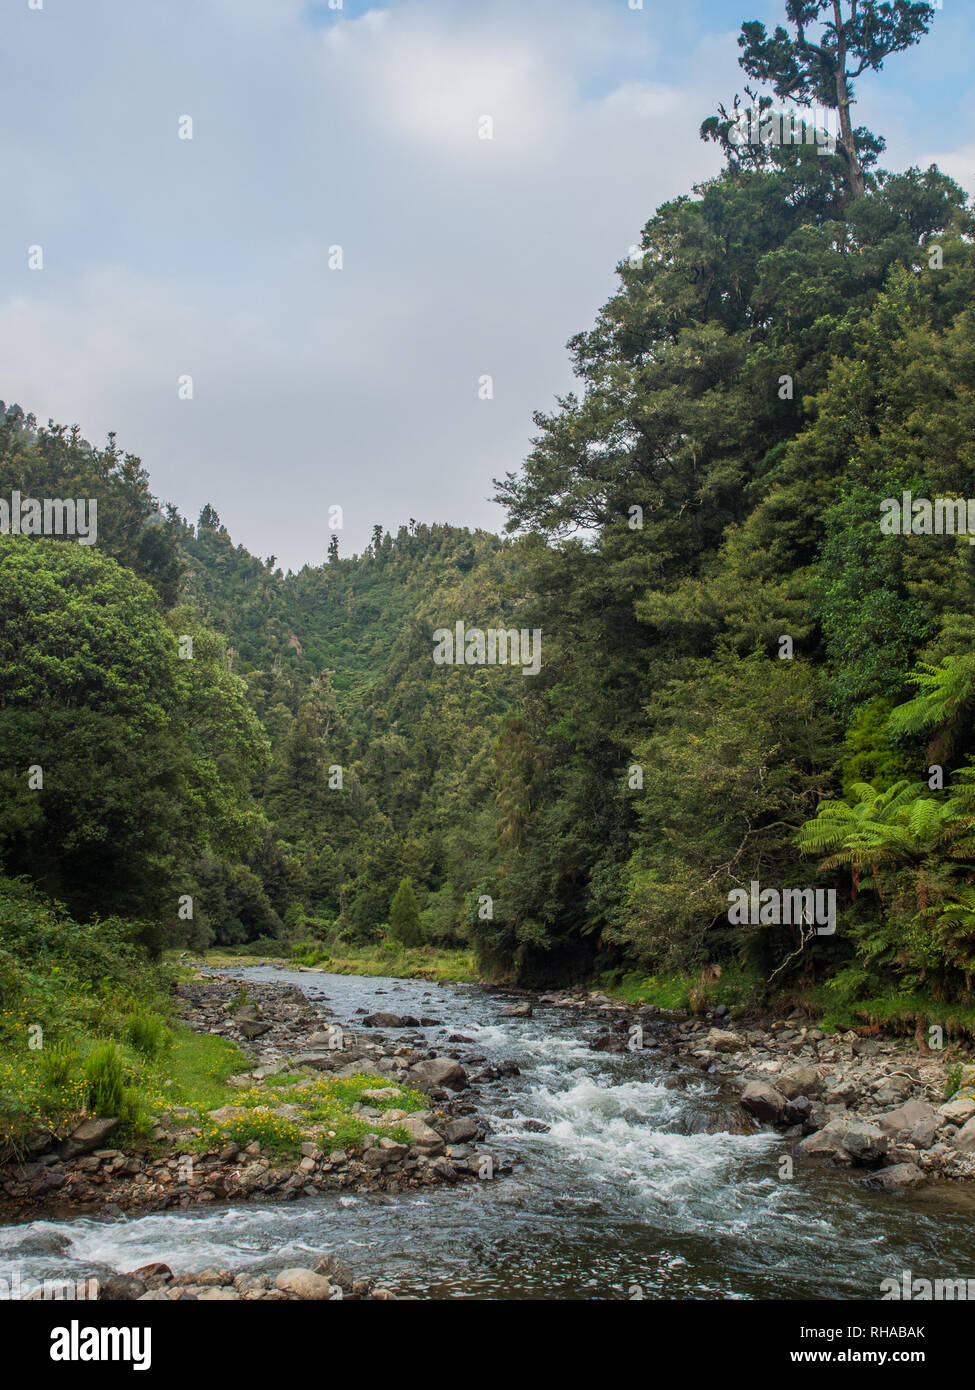 En Mangakakaho Mimiha arroyo que fluye corriente en Ngamuriwai, entre colinas cubiertas de bosques de tierras bajas, Te Urewera National Park, North Island, Nueva Zelanda Foto de stock